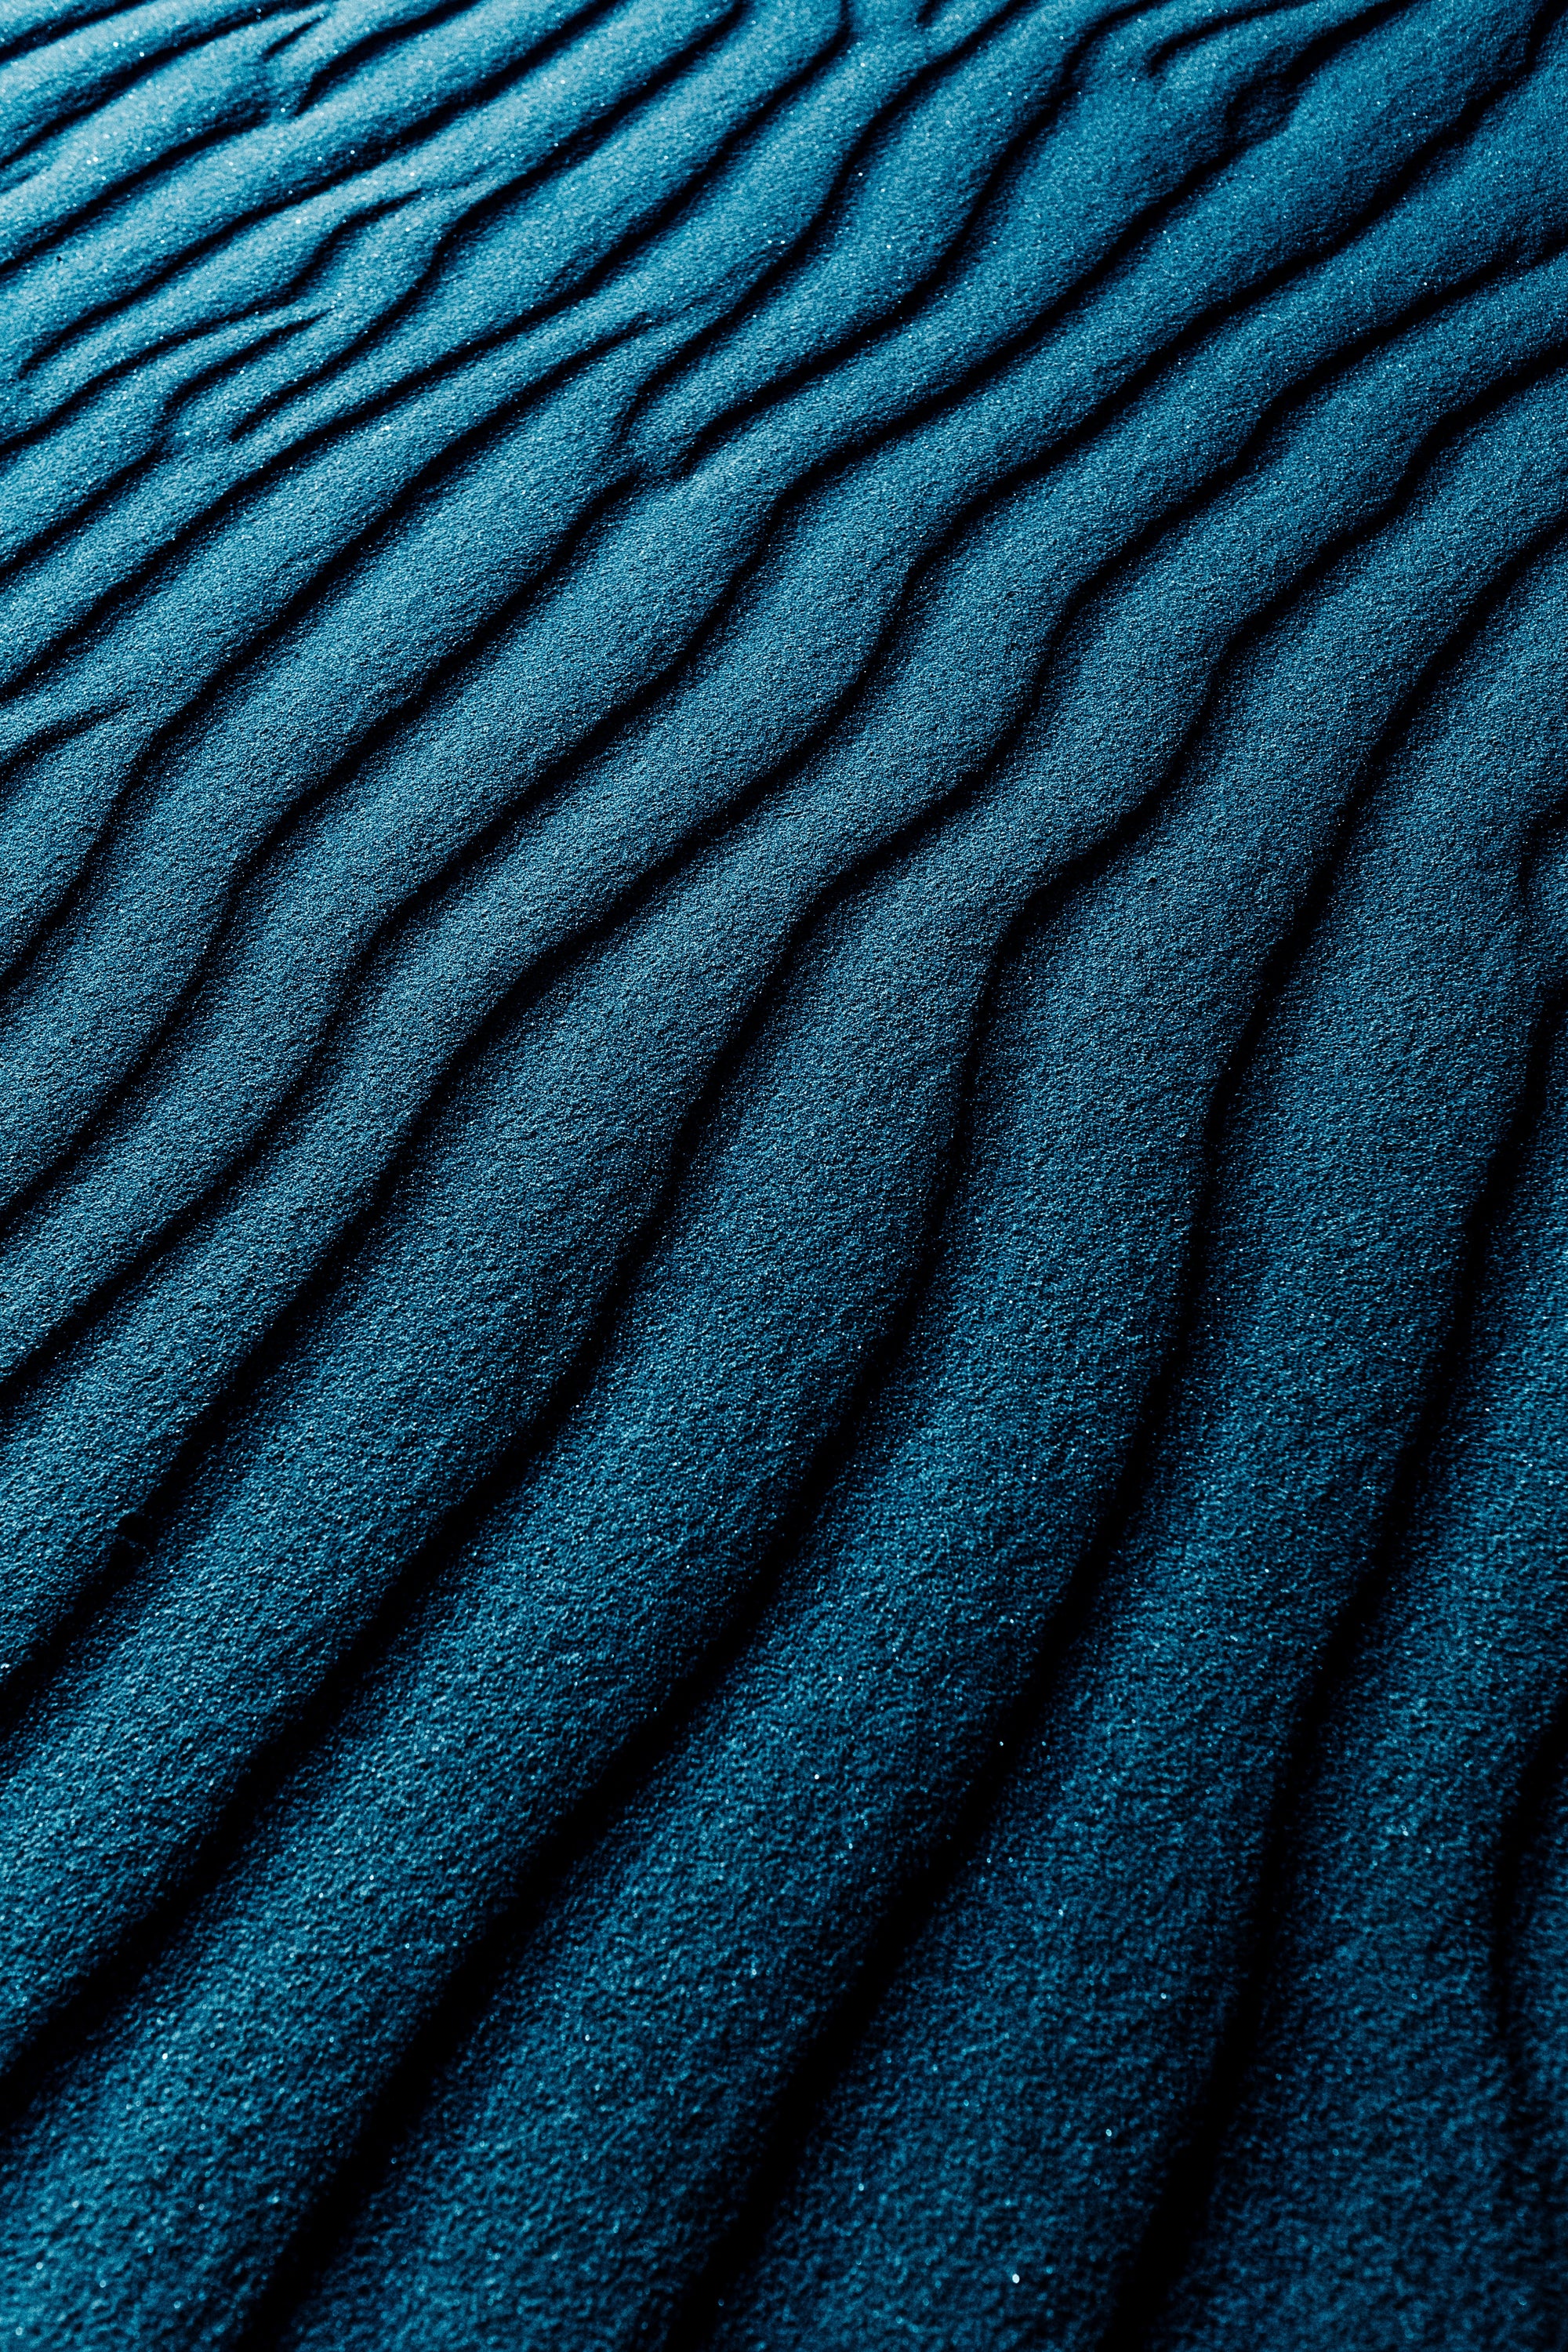 Ein Bild zeigt blauen wellig geformten dunklen Sand